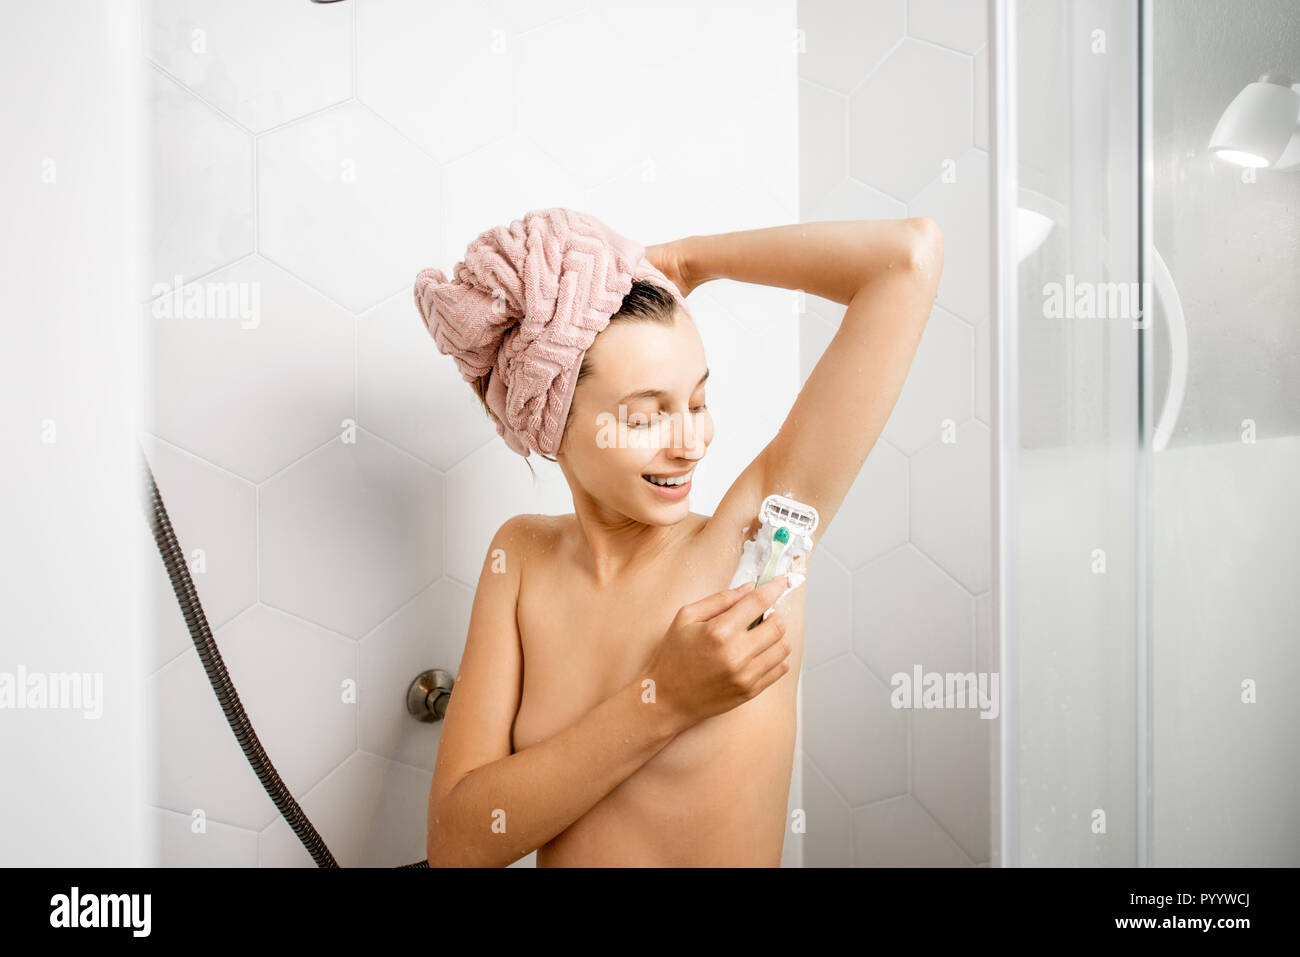 Frau rasieren Ihr Unterarm nach der ständigen im weißen Duschkabine Dusche  Stockfotografie - Alamy